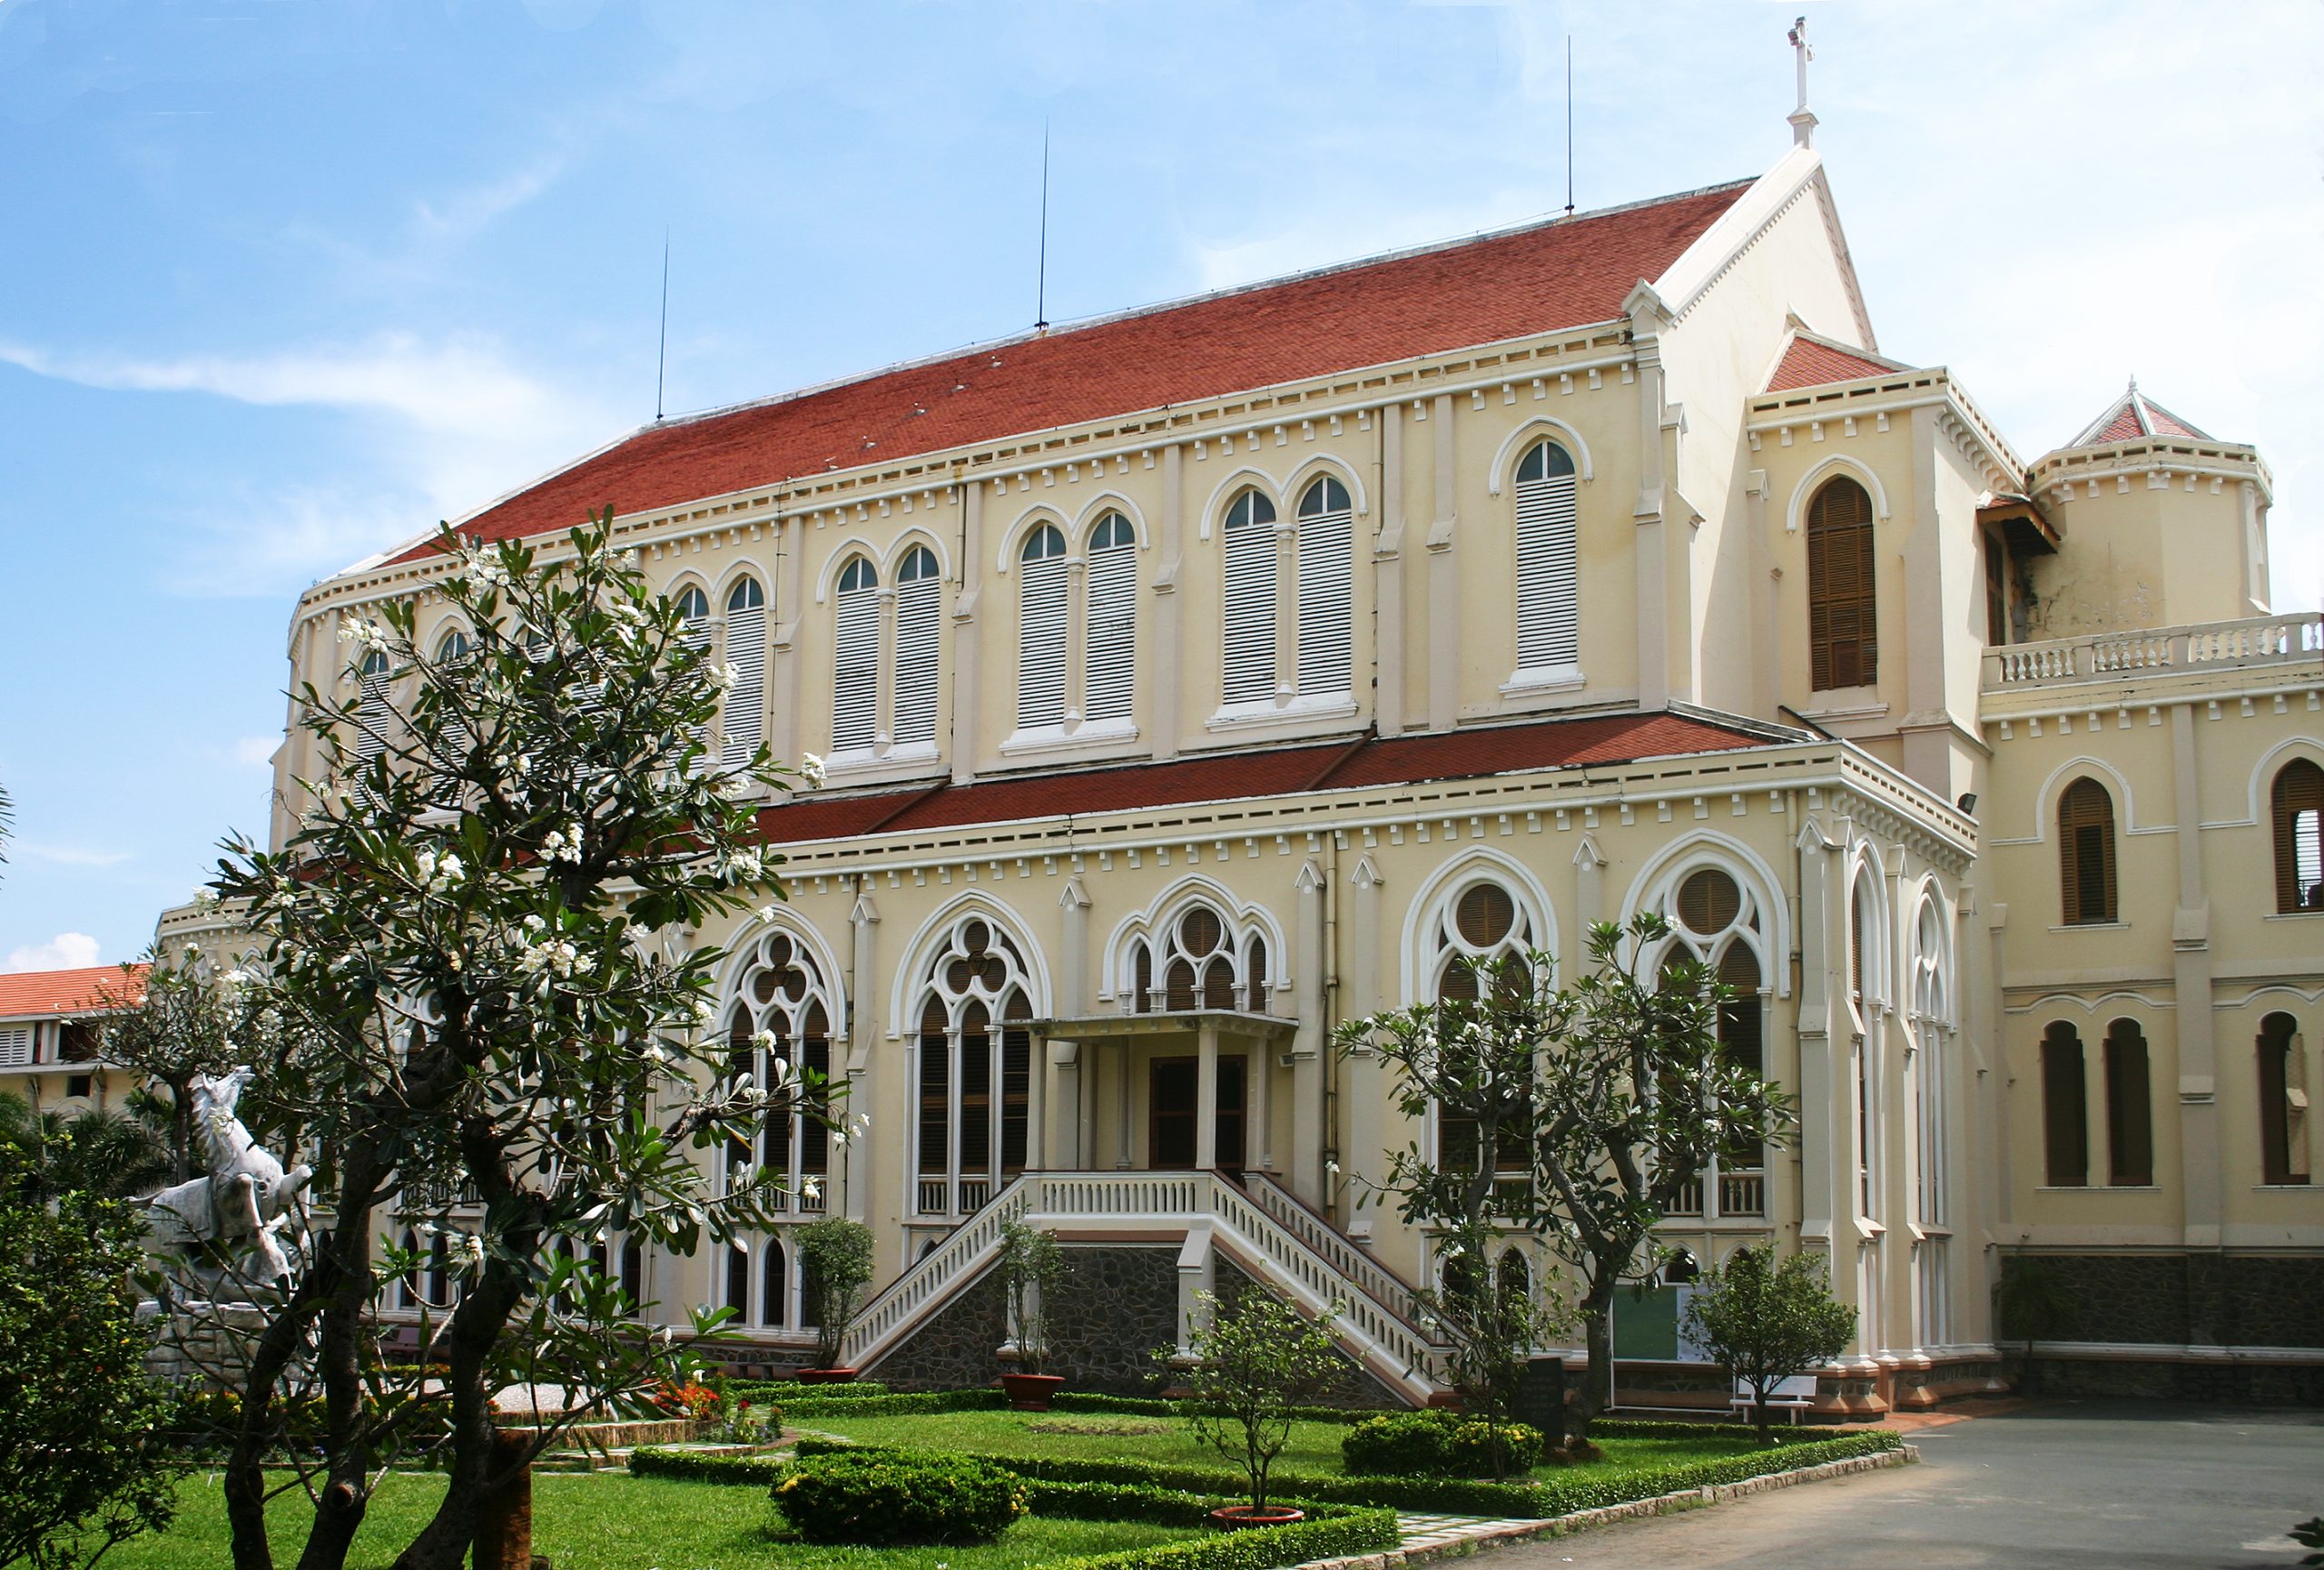 Nhà thờ ở Sài Gòn, nét độc đáo Tây phương trên nền văn hóa Á Đông - 7